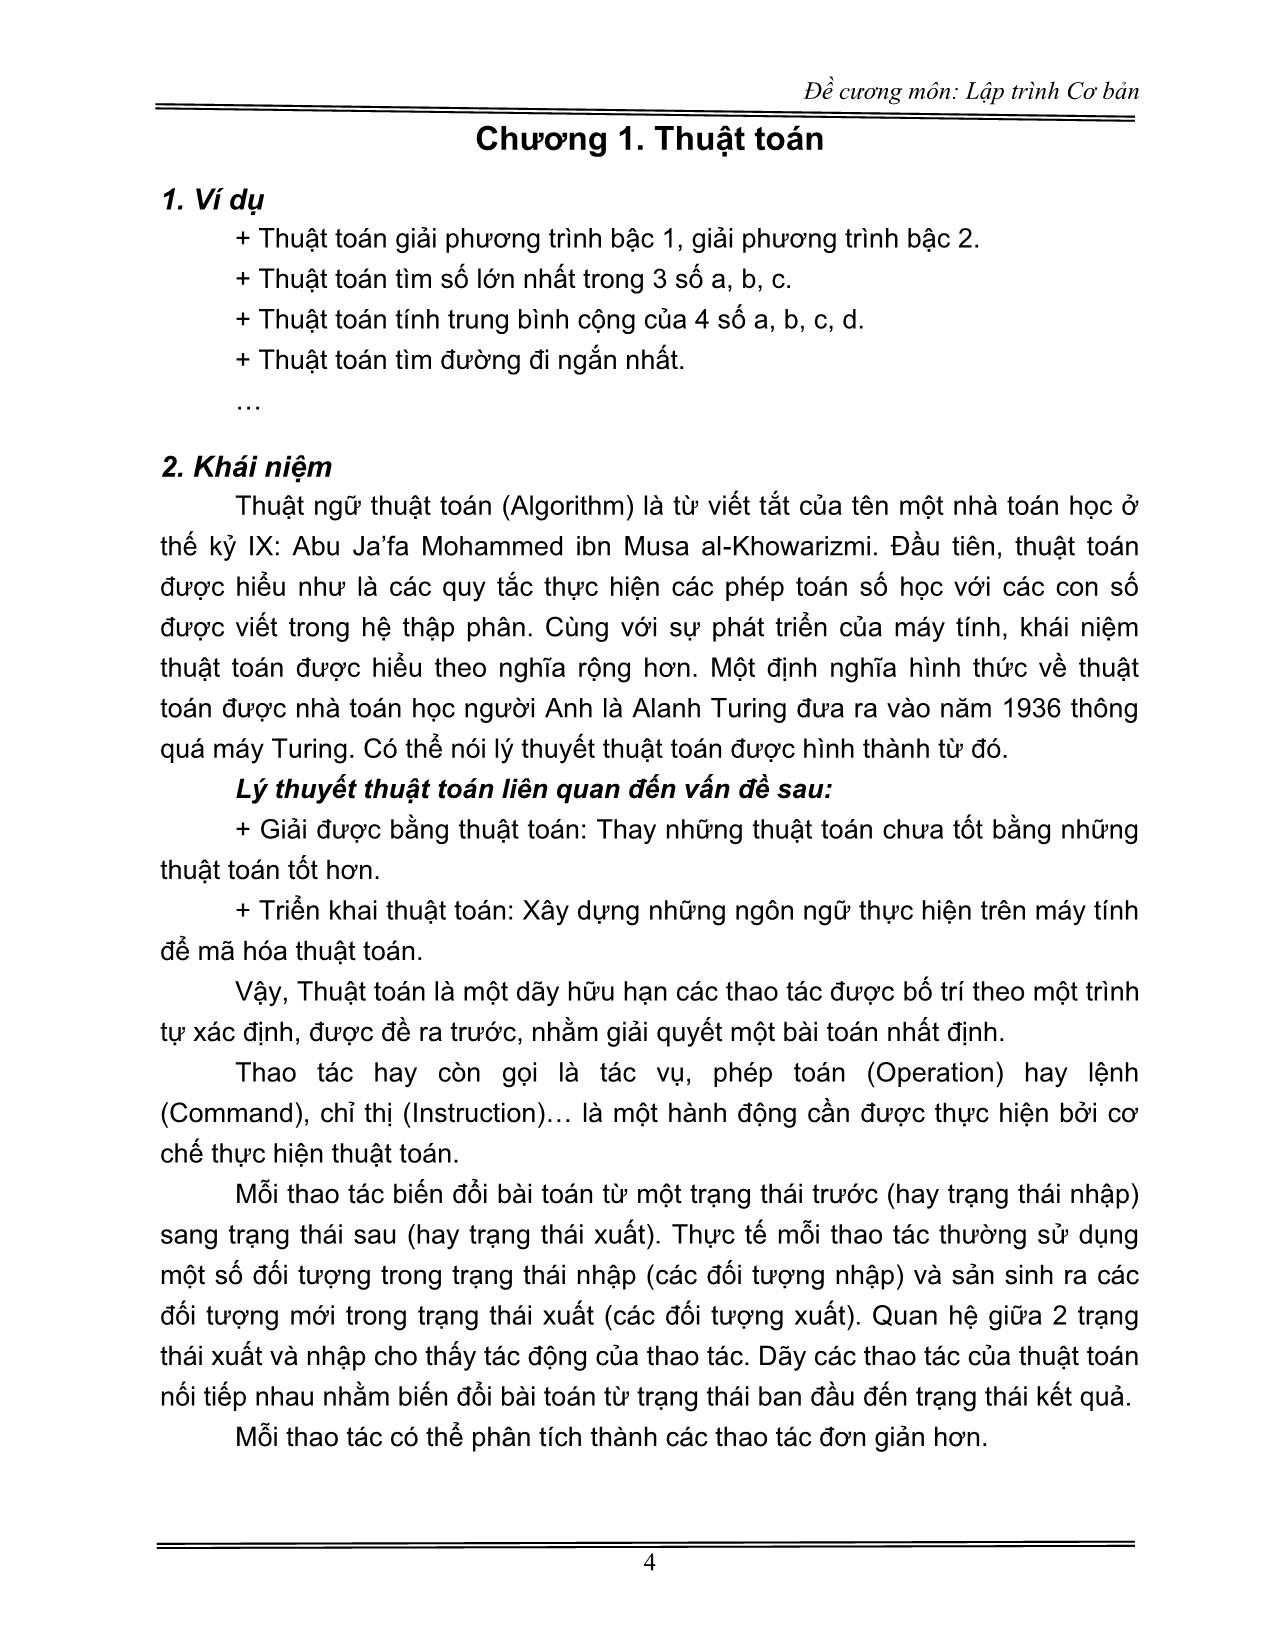 Đề cương môn Lập trình Cơ bản (Phần 1) trang 4